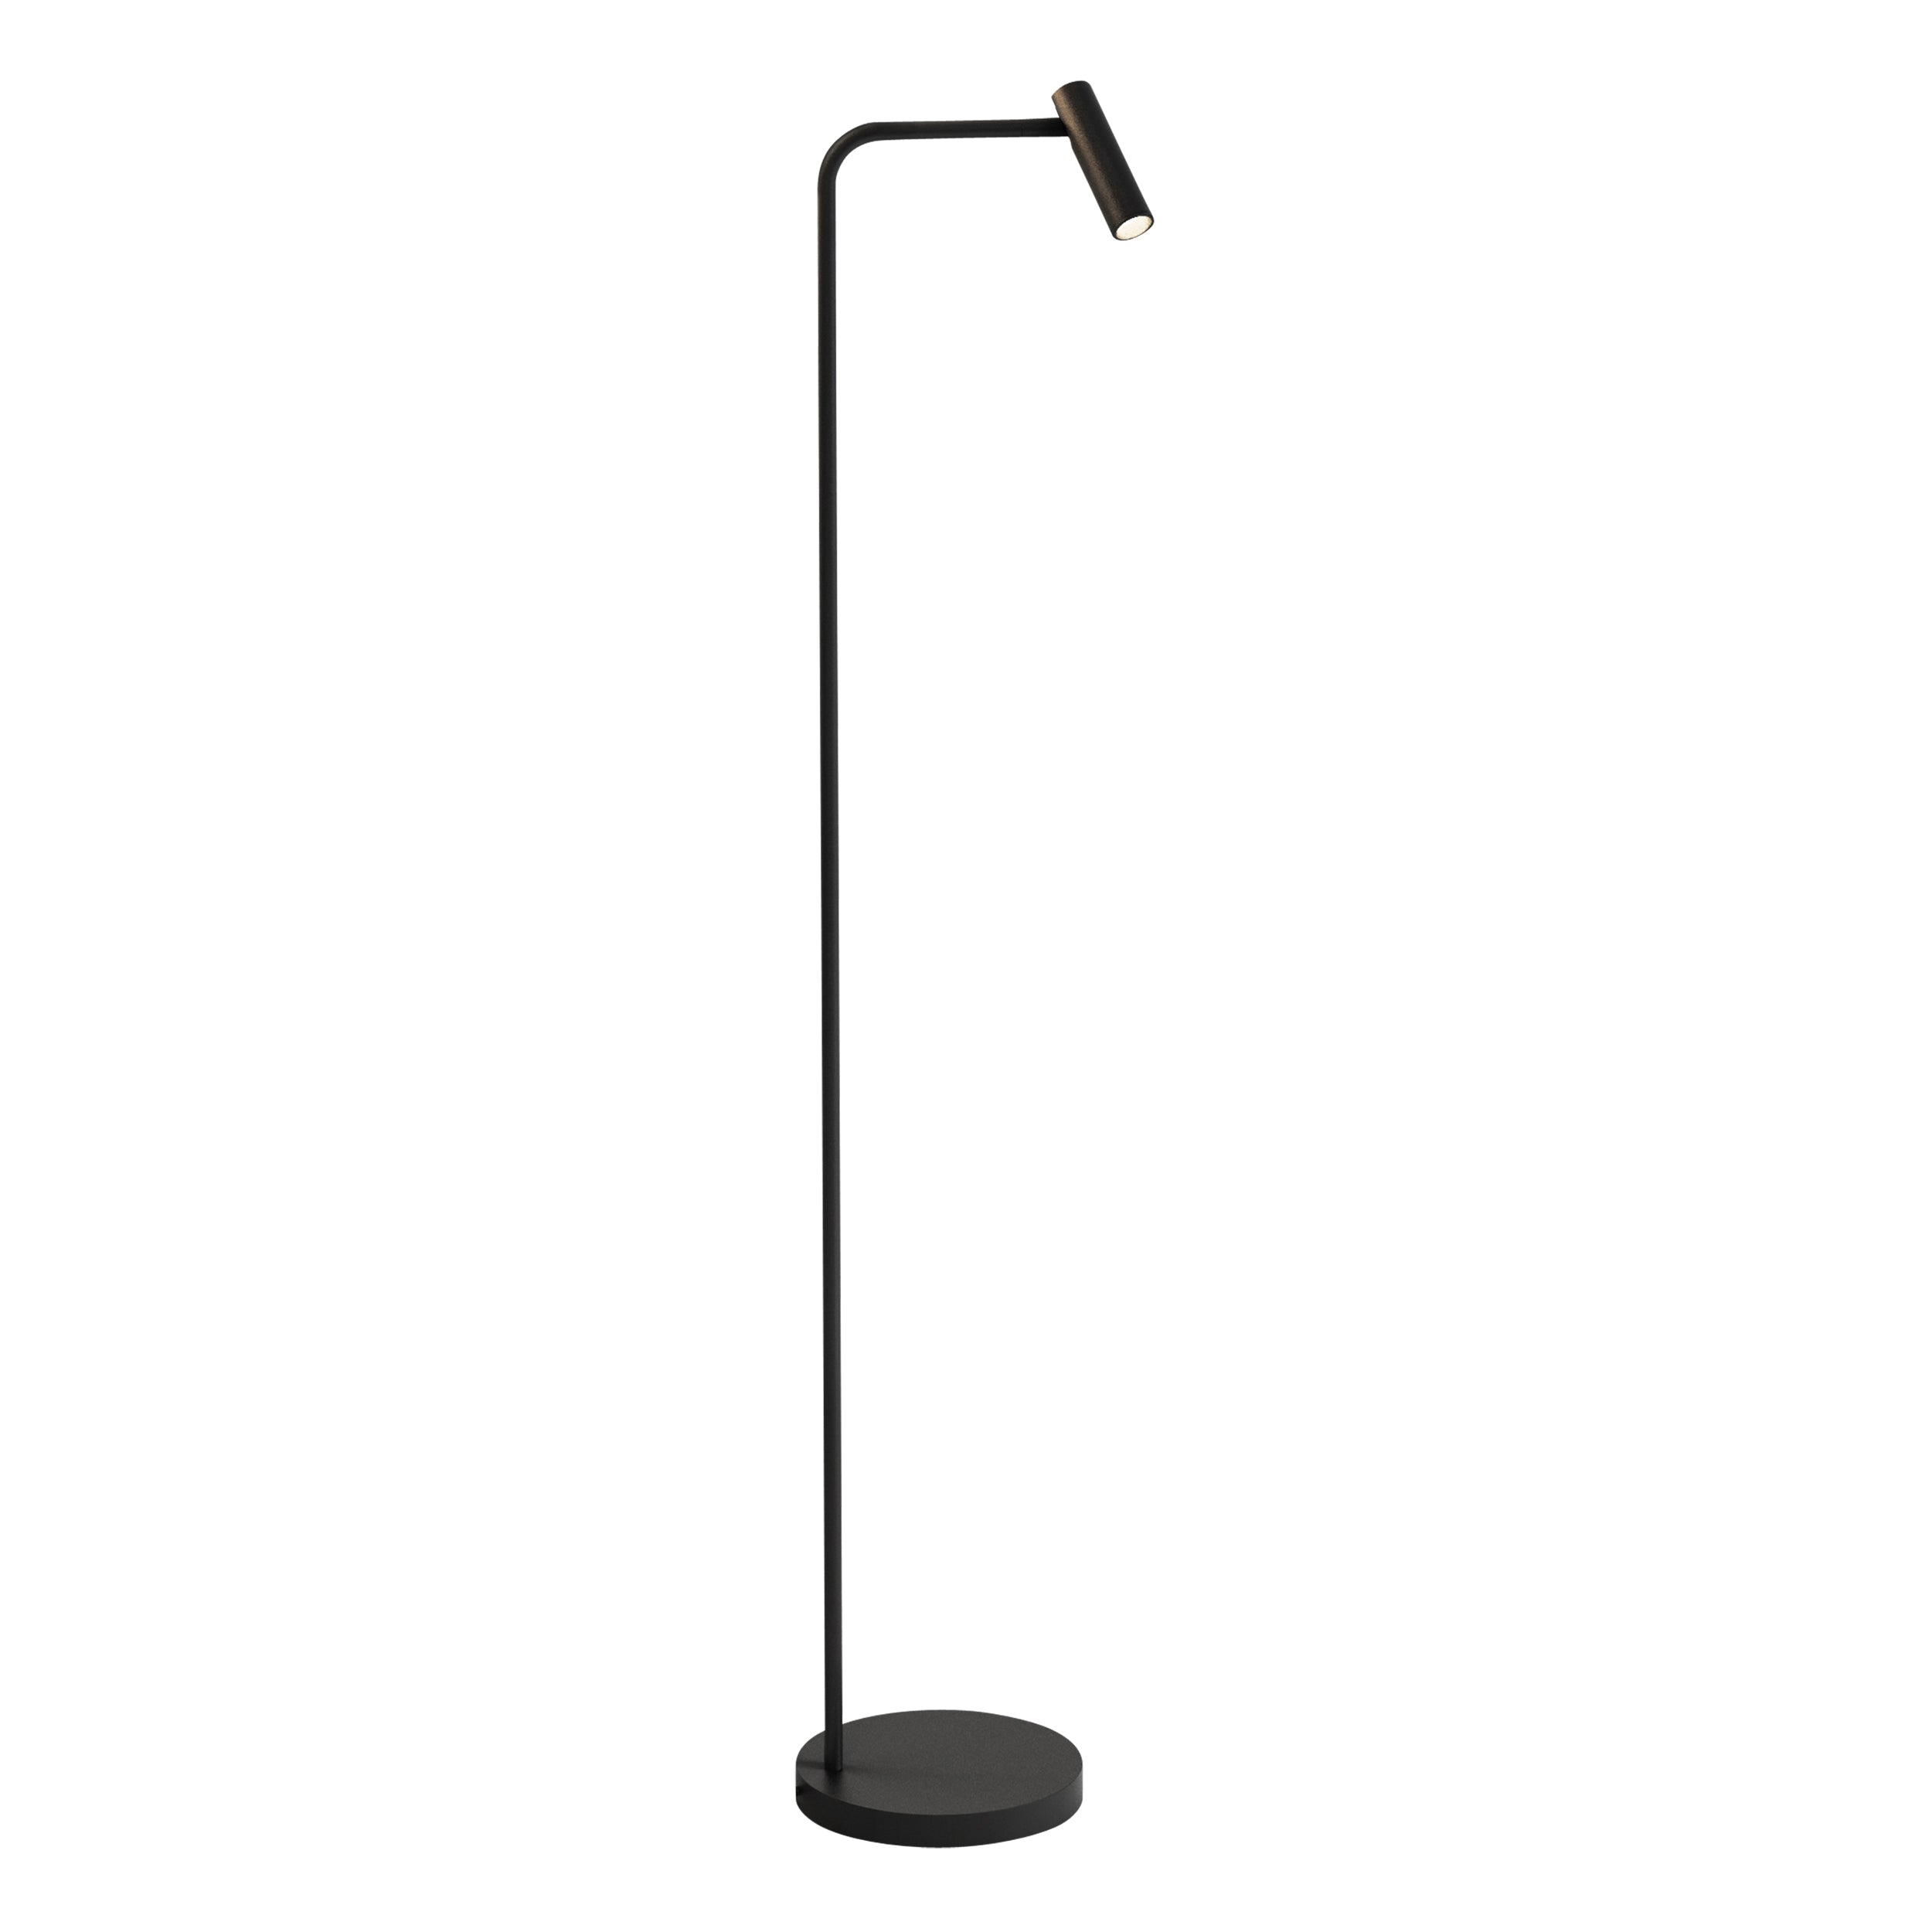 Gulvlampe i sort aluminium med bøjet hals, rund fod og et aflangt, rundt, justerbart hoved.